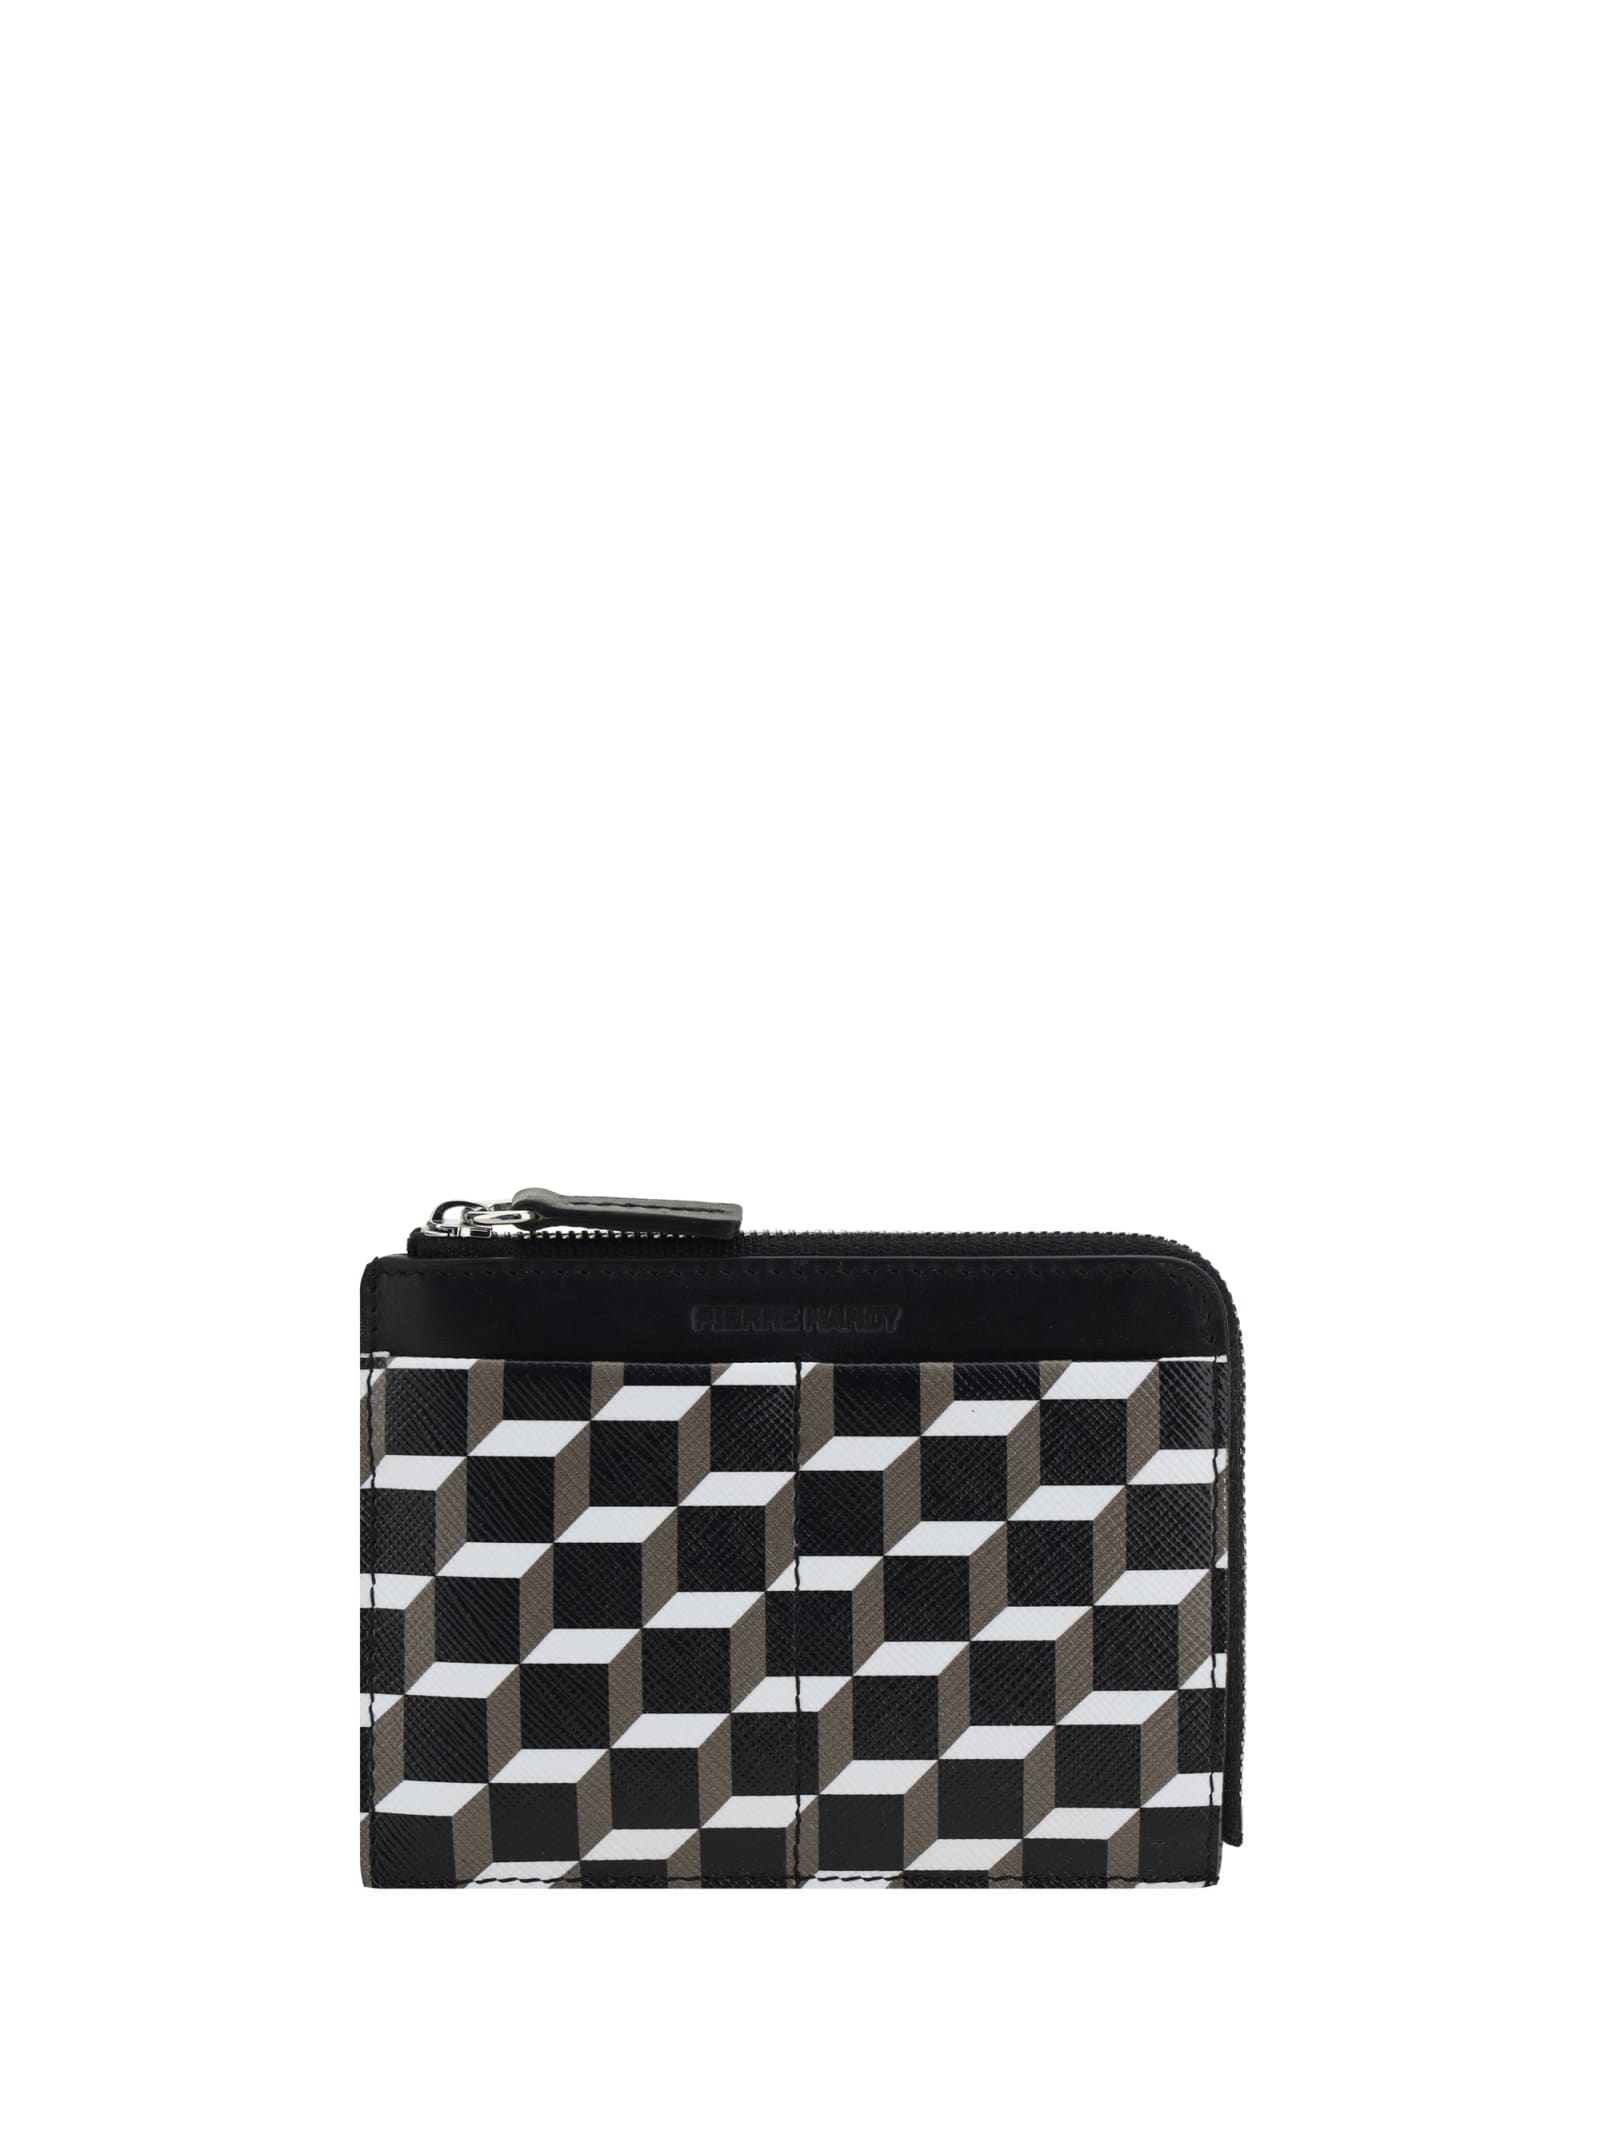 Pierre Hardy Cube Wallet In Black-white-black